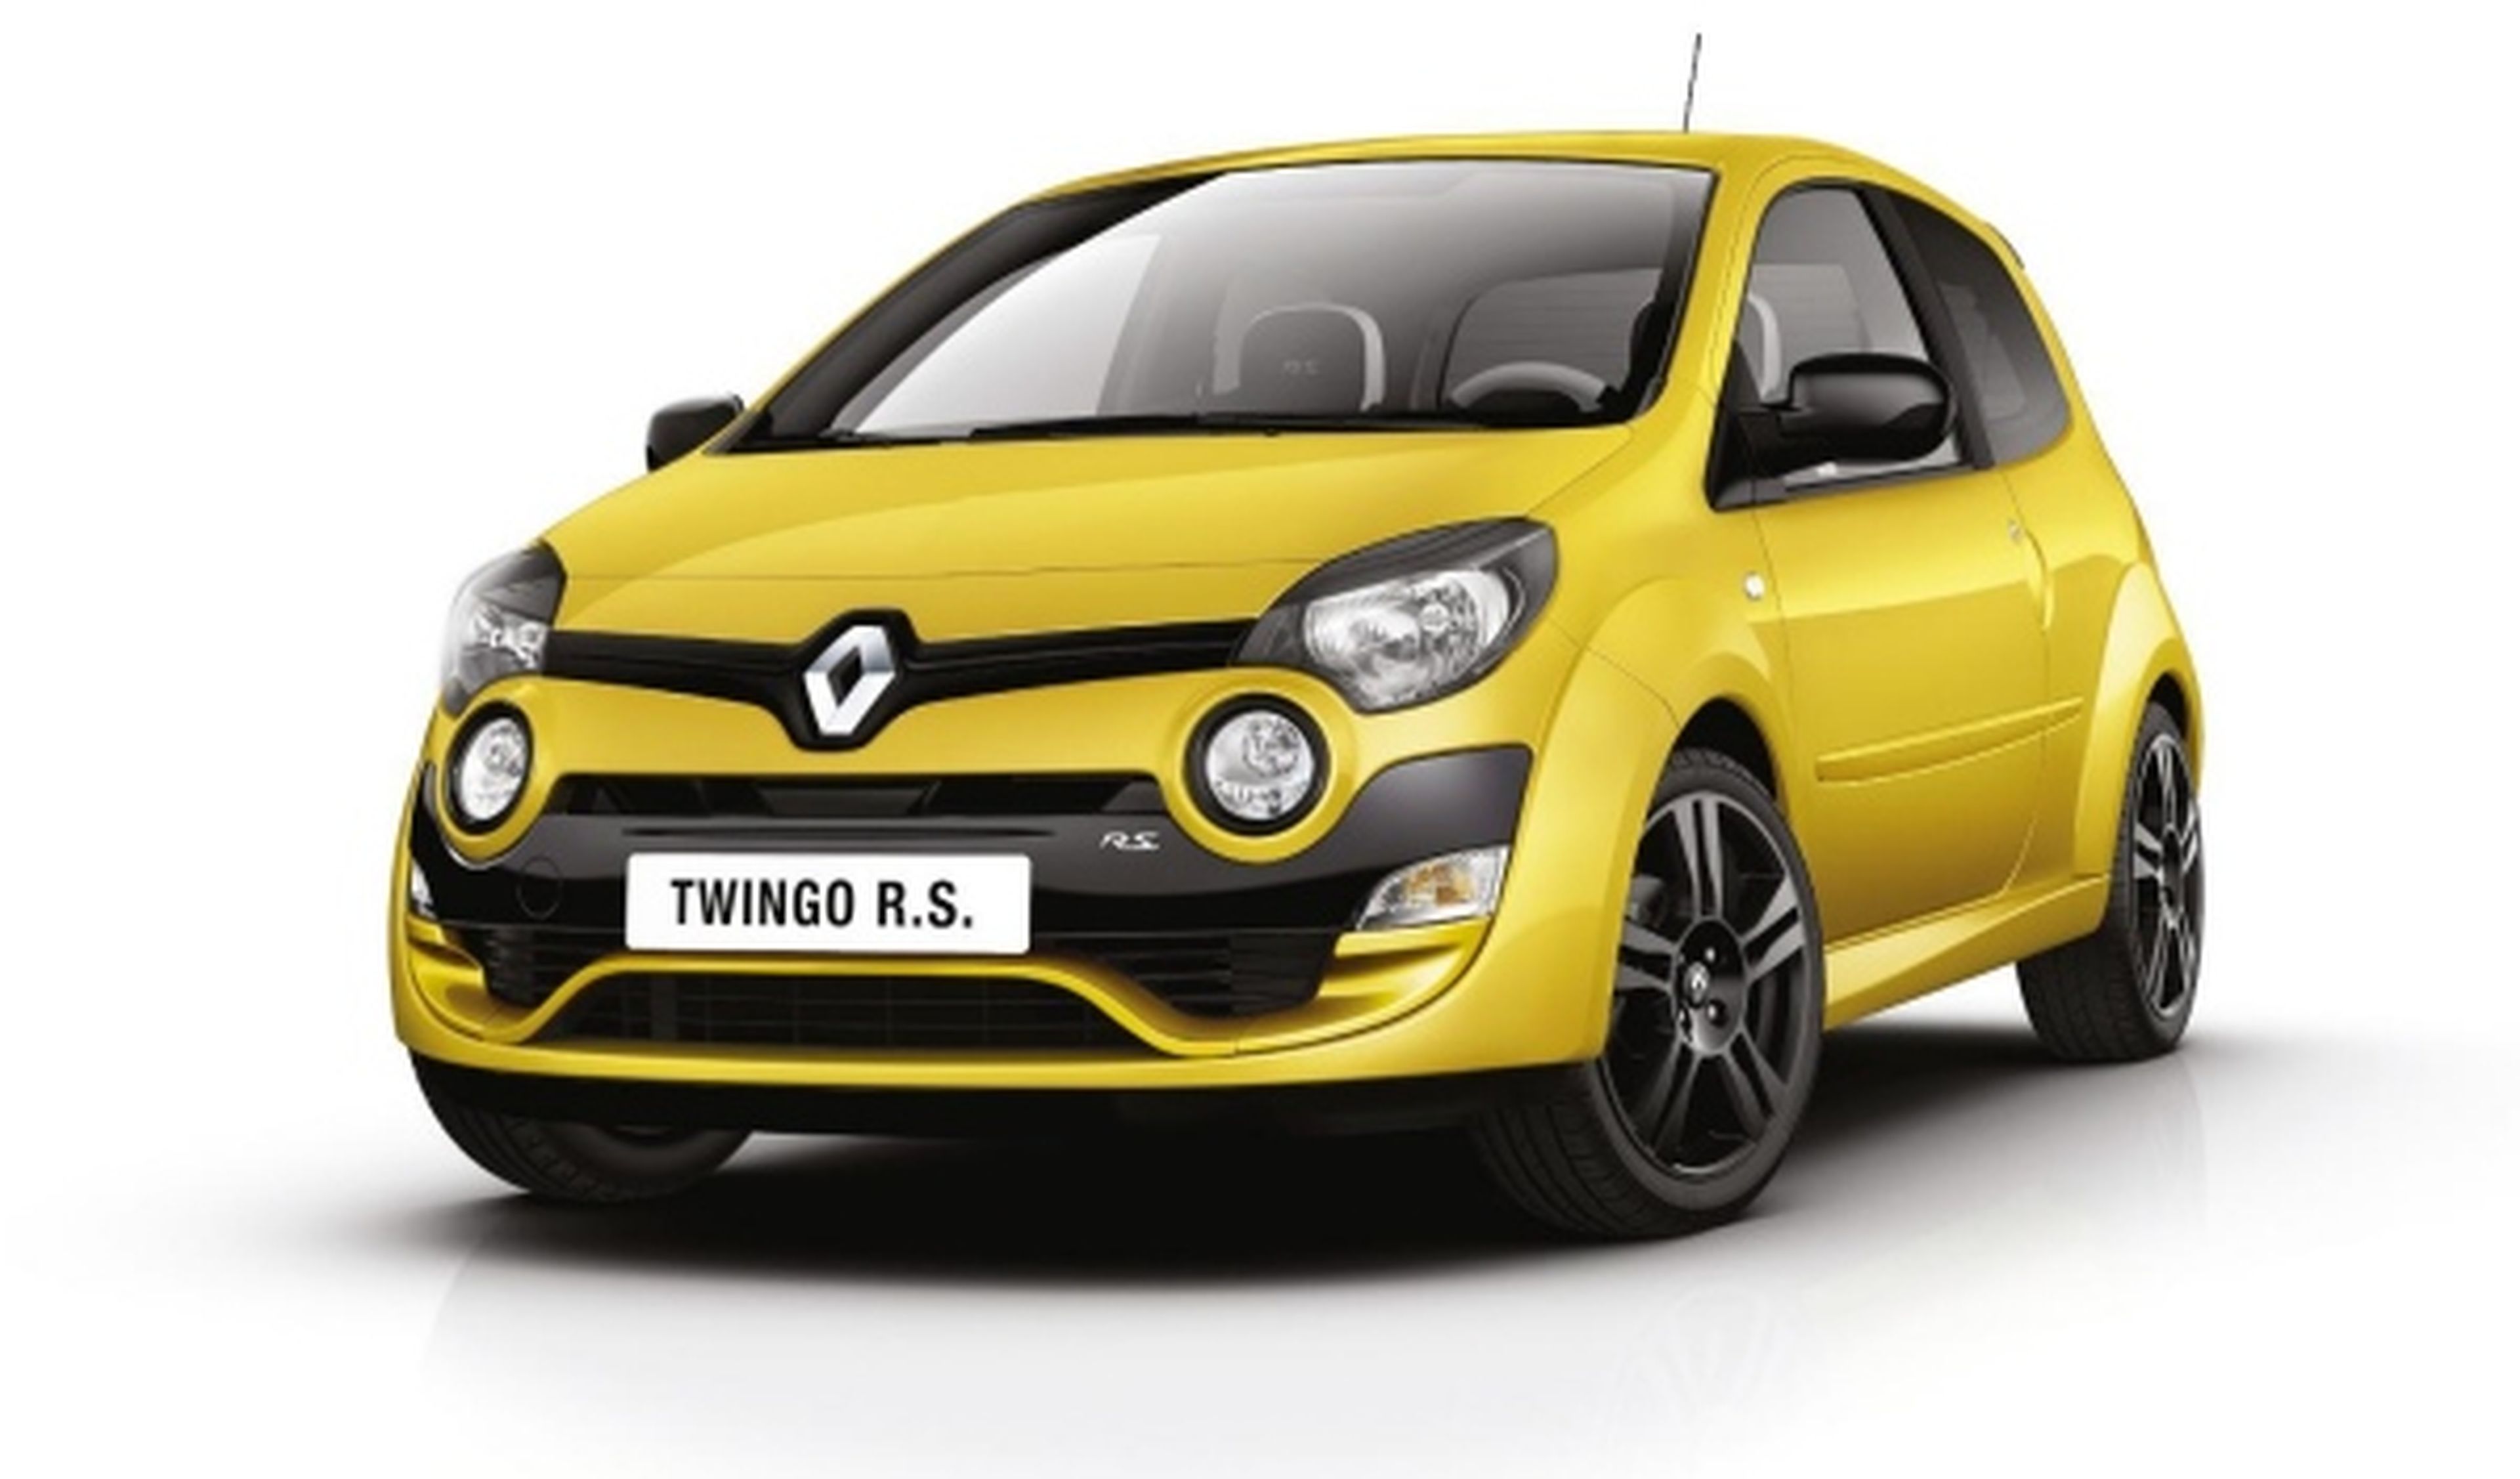 El nuevo Twingo R.S. llega al Salón de Frankfurt 2011